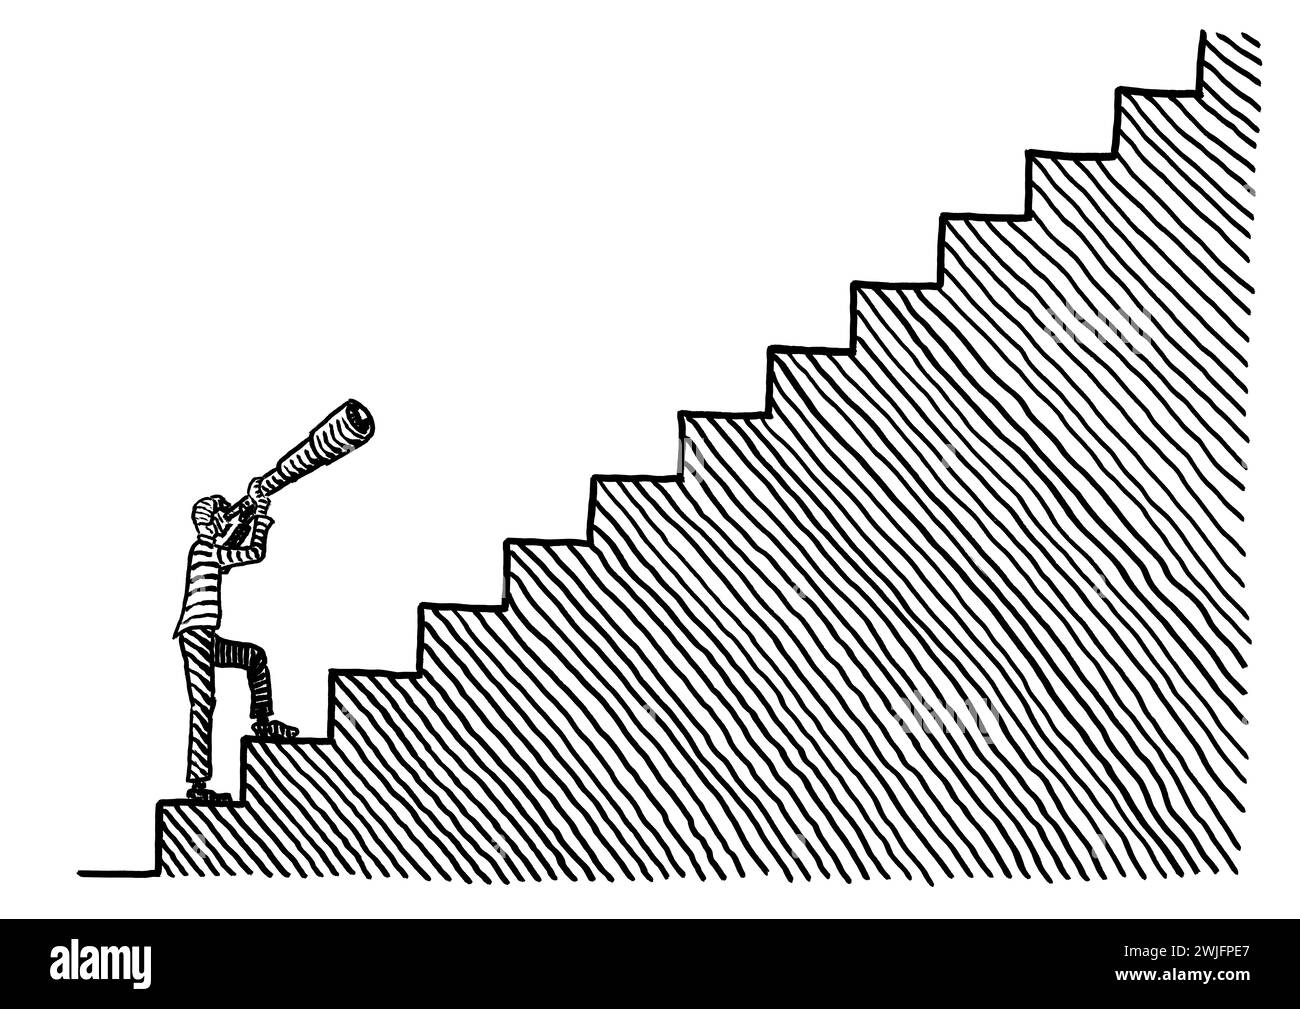 Freihändige Zeichnung eines Geschäftsmannes, der unten auf einer Treppe steht und durch ein Teleskop hinaufblickt. Metapher für Vision, Scharfsinn, Zielsetzung, Stockfoto